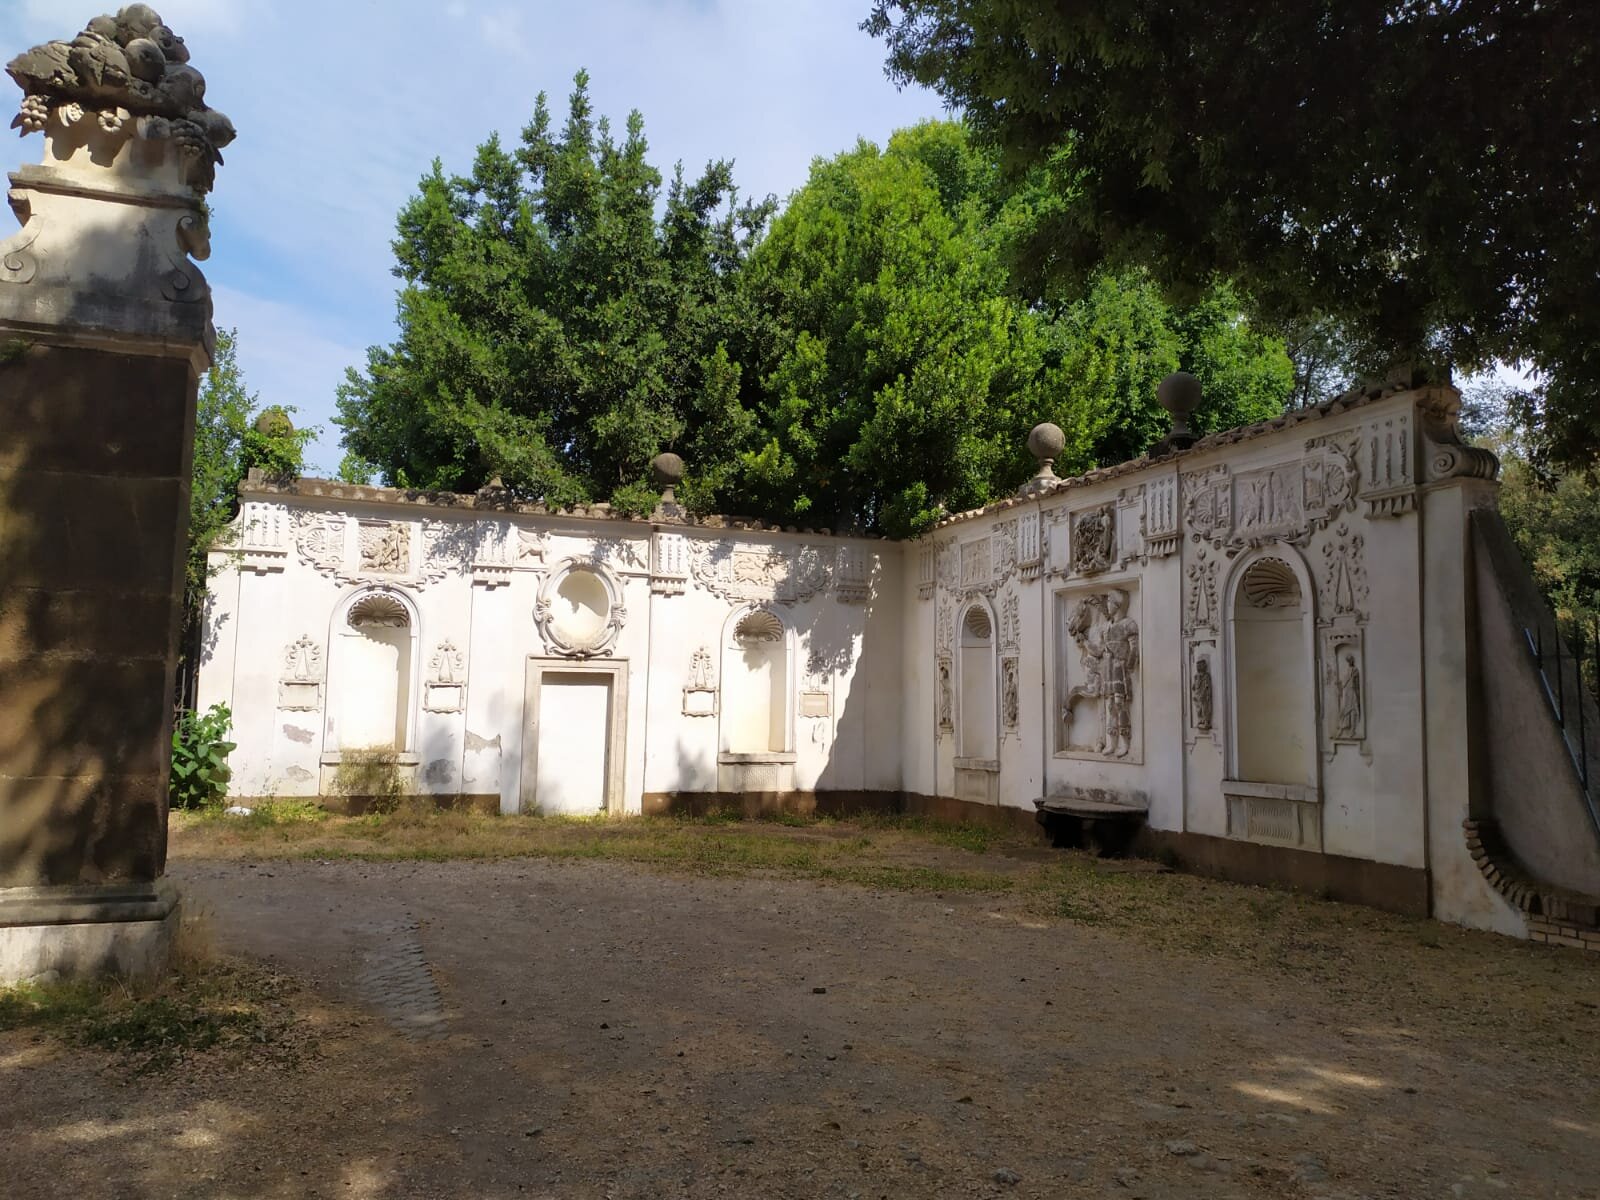 Villa Borghese-Parco dei Daini Bassorilievo.jpg